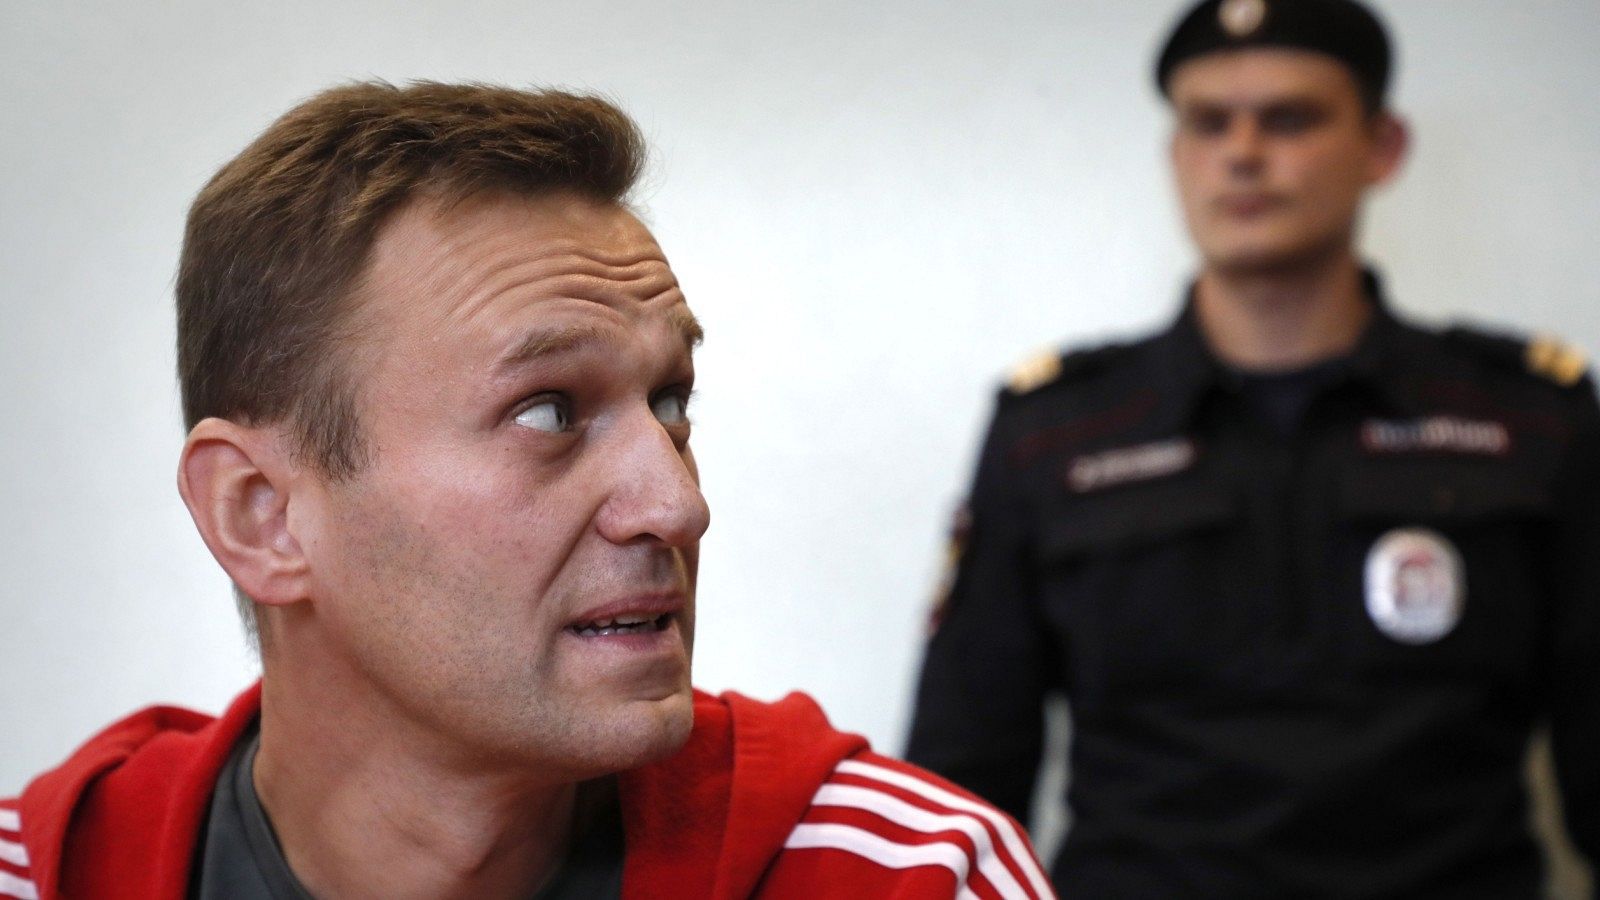 El líder opositor ruso Alexei Navalny asiste a una audiencia en un tribunal de Moscú, en una imagen de archivo.